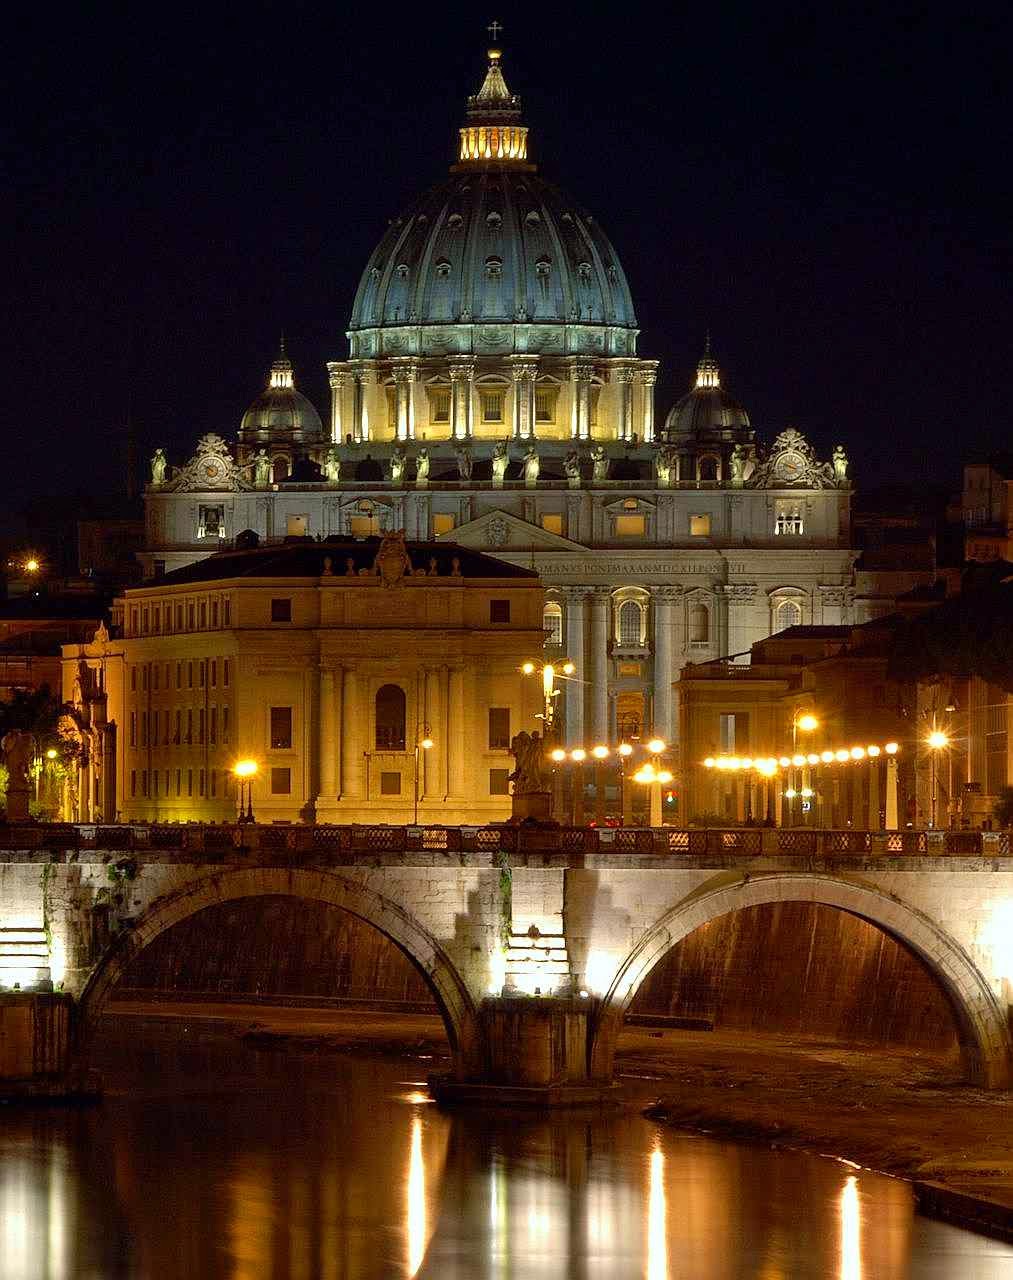 A Roma pagã ruiu, mas a Igreja tirou a cidade das ruínas e a elevou a uma glória e a um esplendor ainda maior.